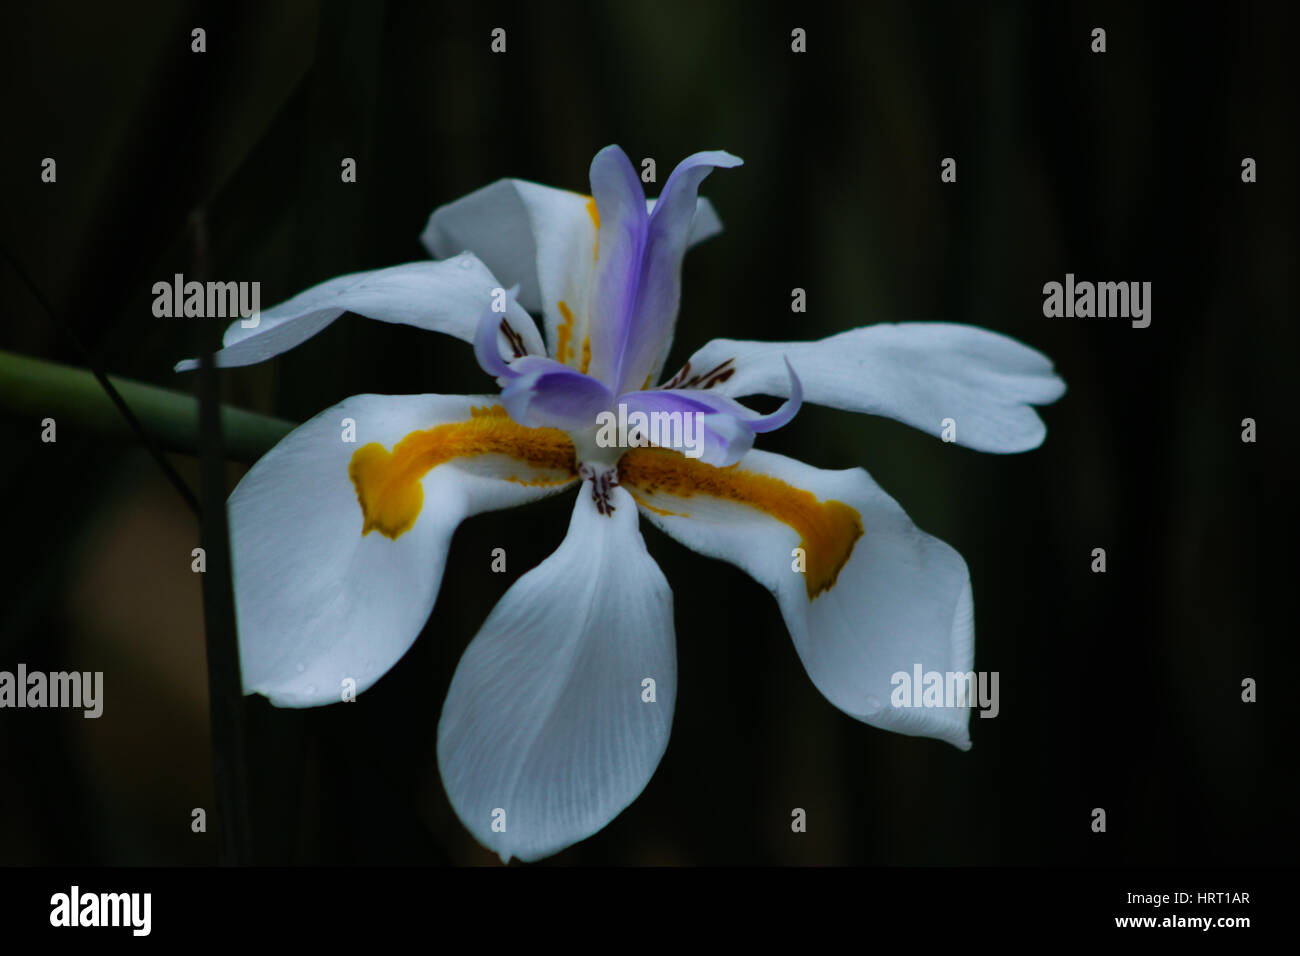 Einzigen Dietes Iridioides (afrikanische Iris). Zierpflanze in der Familie der Iridaceae: weiße Blume mit gelb und violett, mit sechs freien Blütenblättern gekennzeichnet. Stockfoto